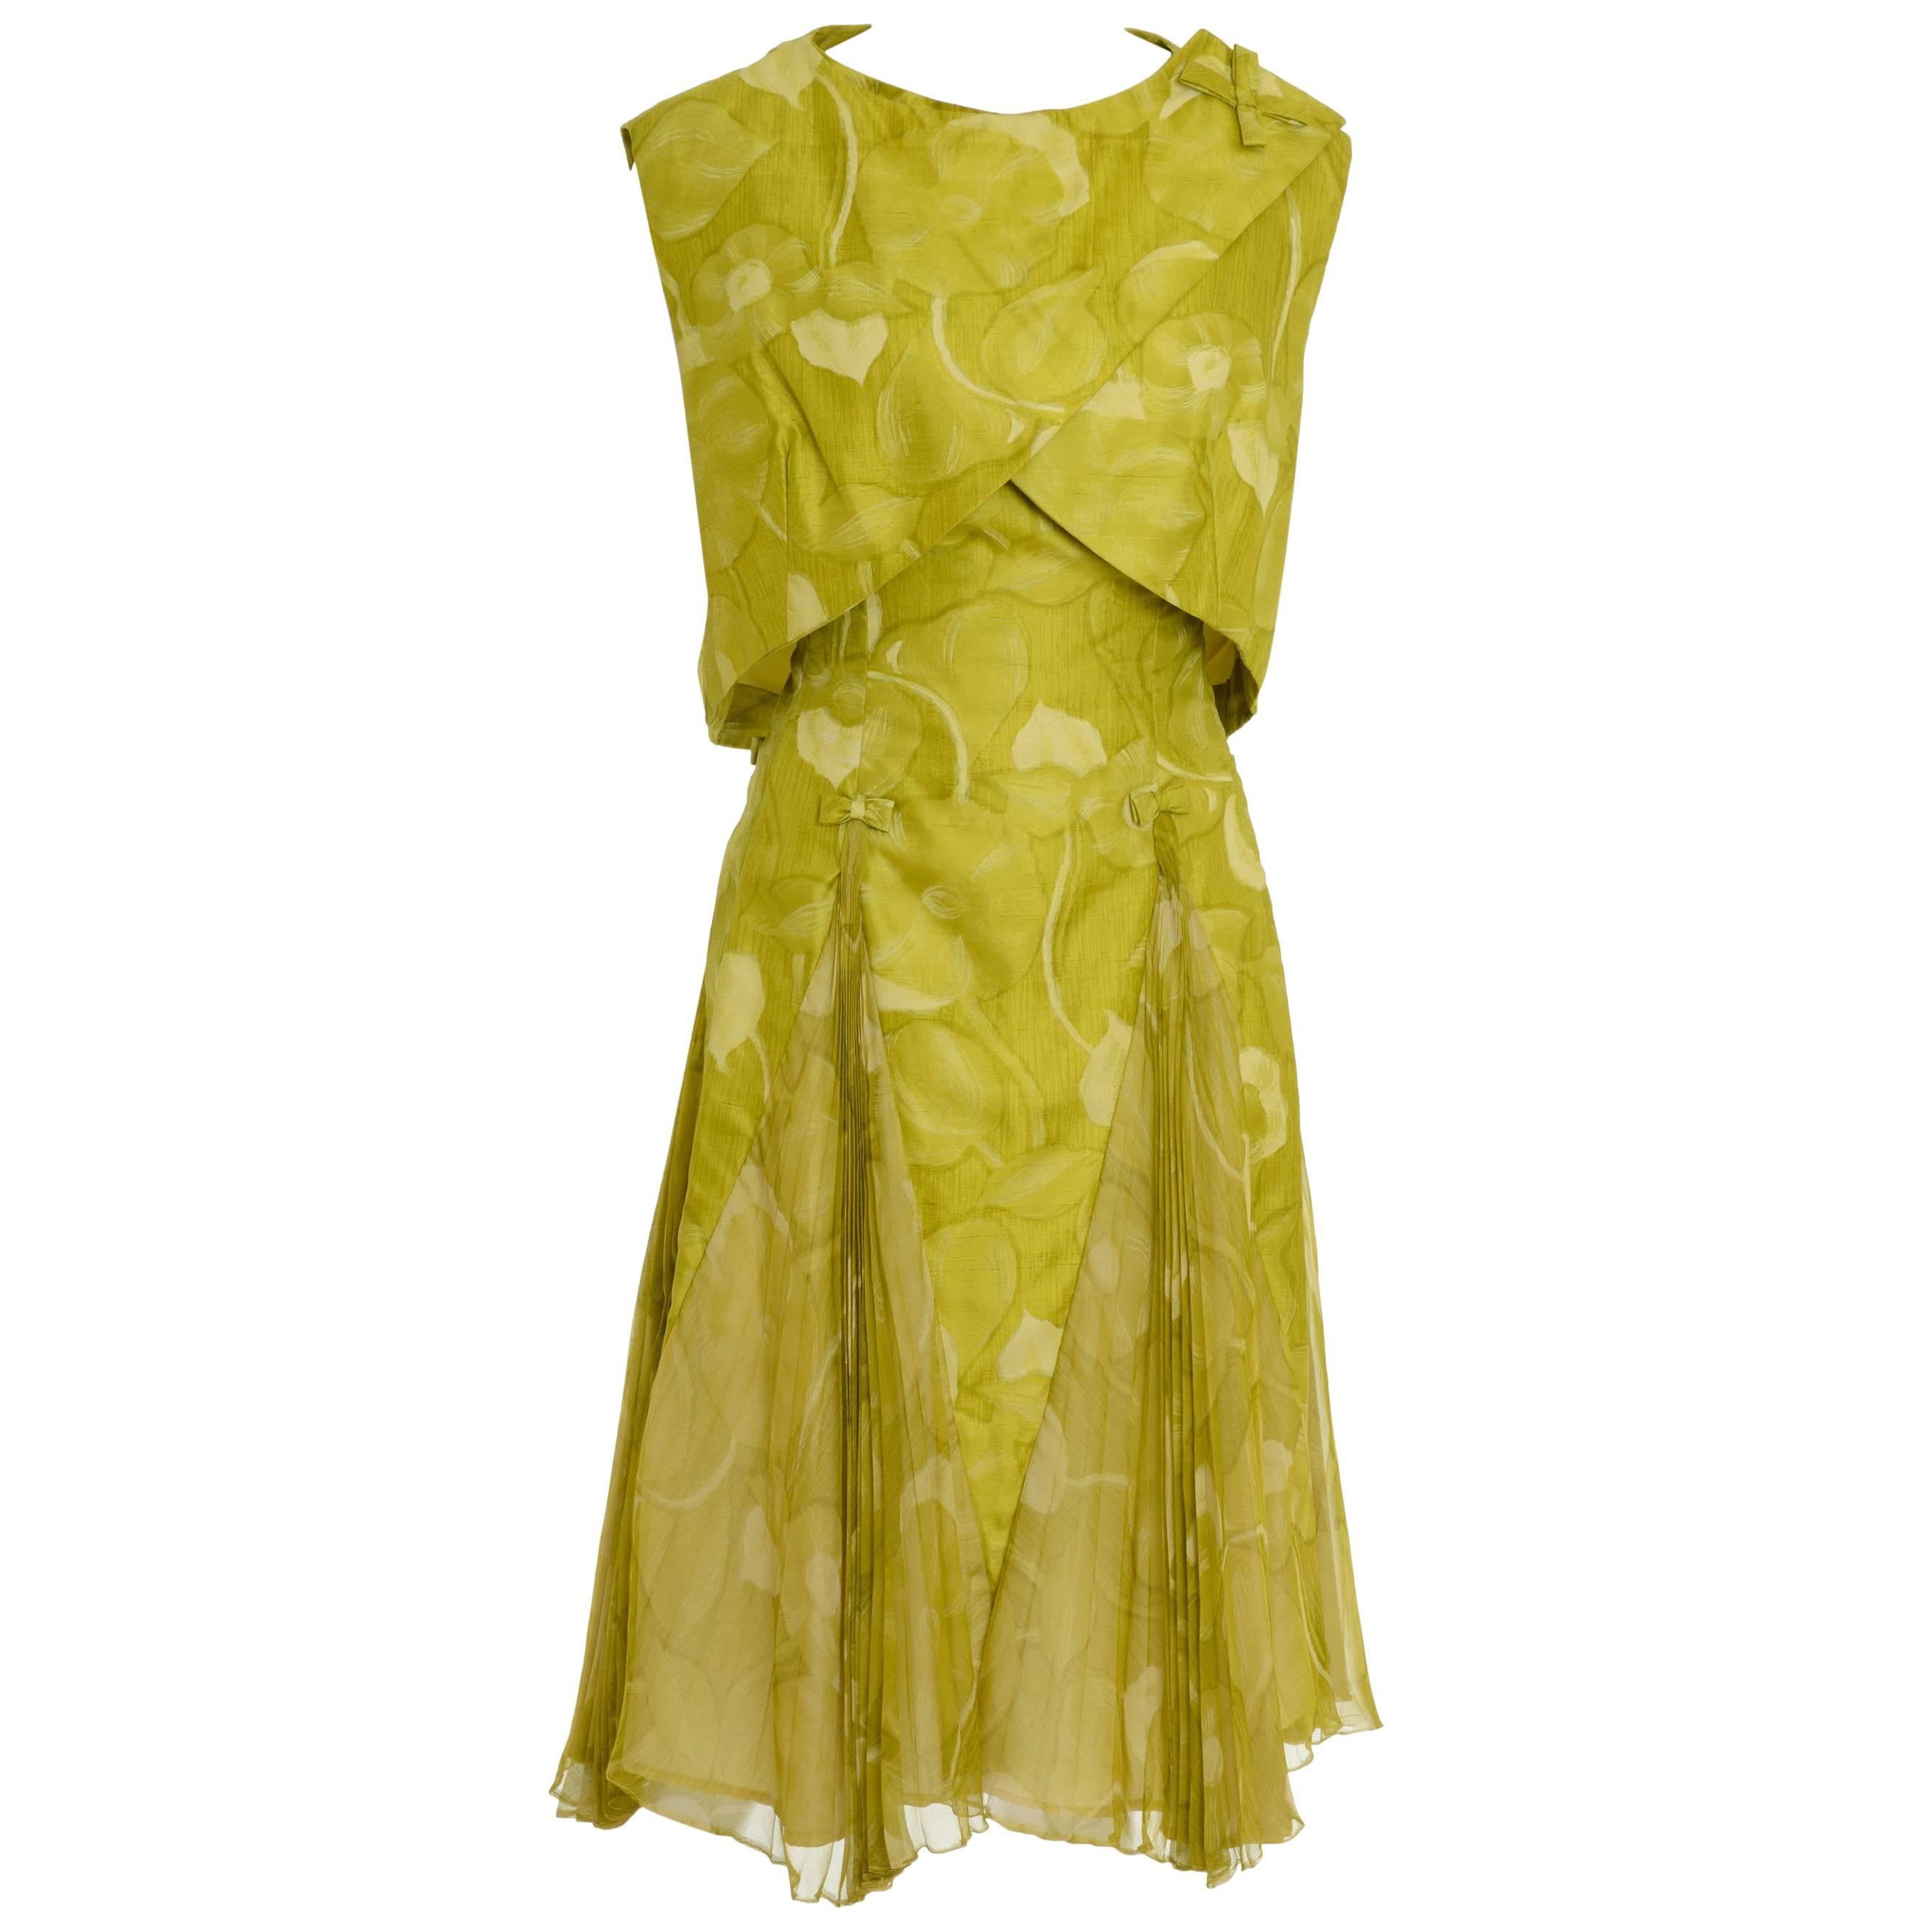 1950s Italian Couture Floral Print Cocktail Suit Pleateds Bolero Suit Dress For Sale